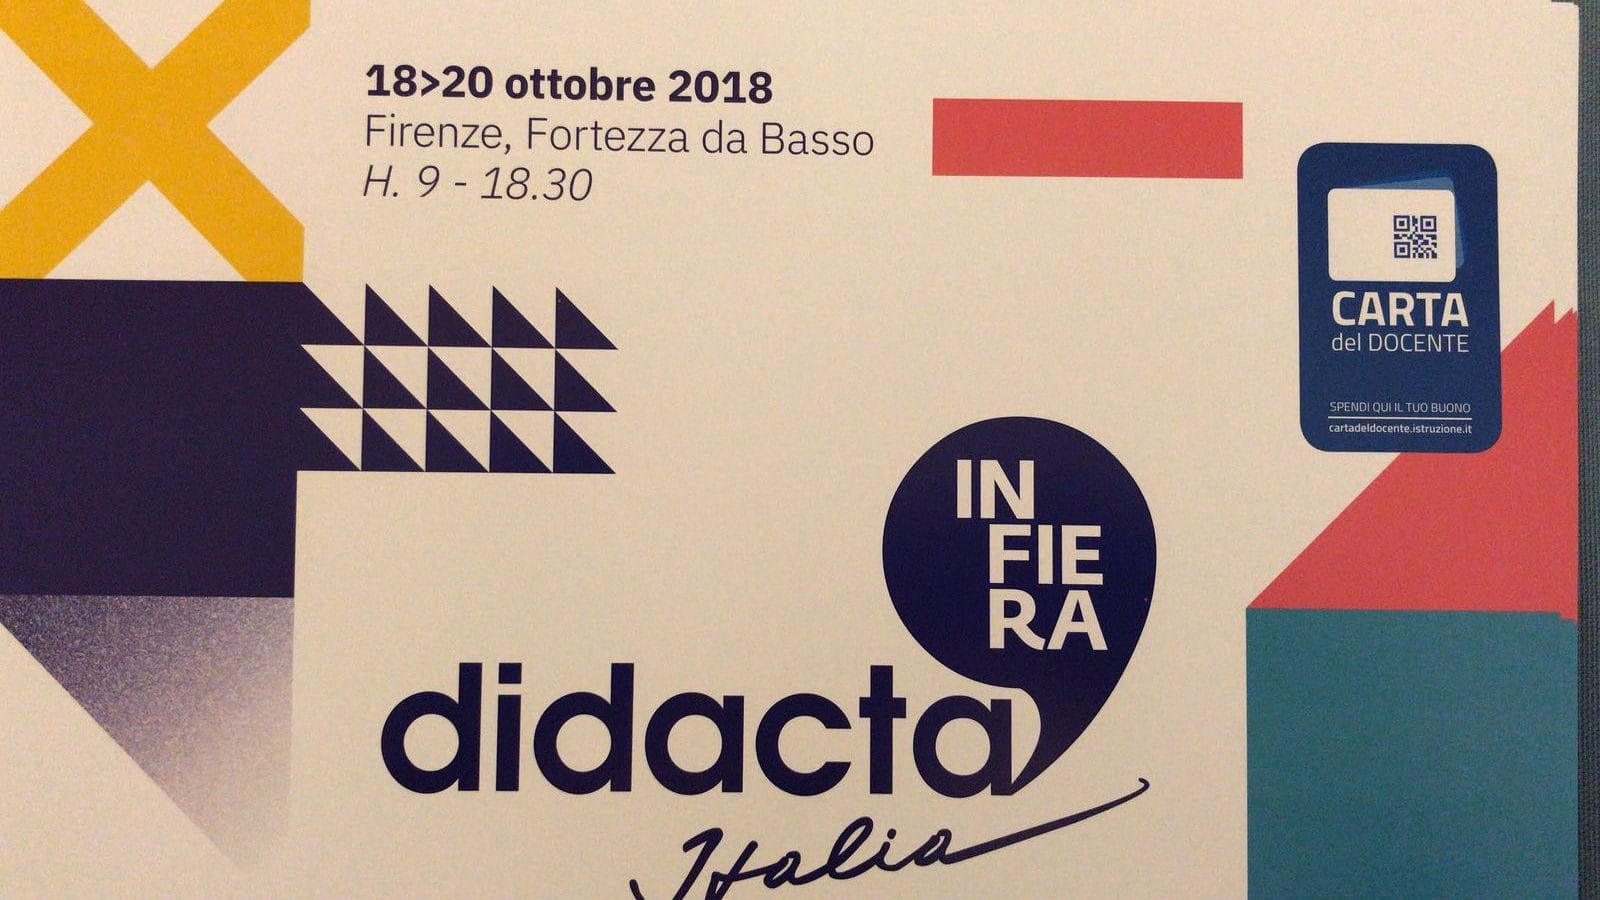 Didacta: 5 settembre seconda edizione a Firenze